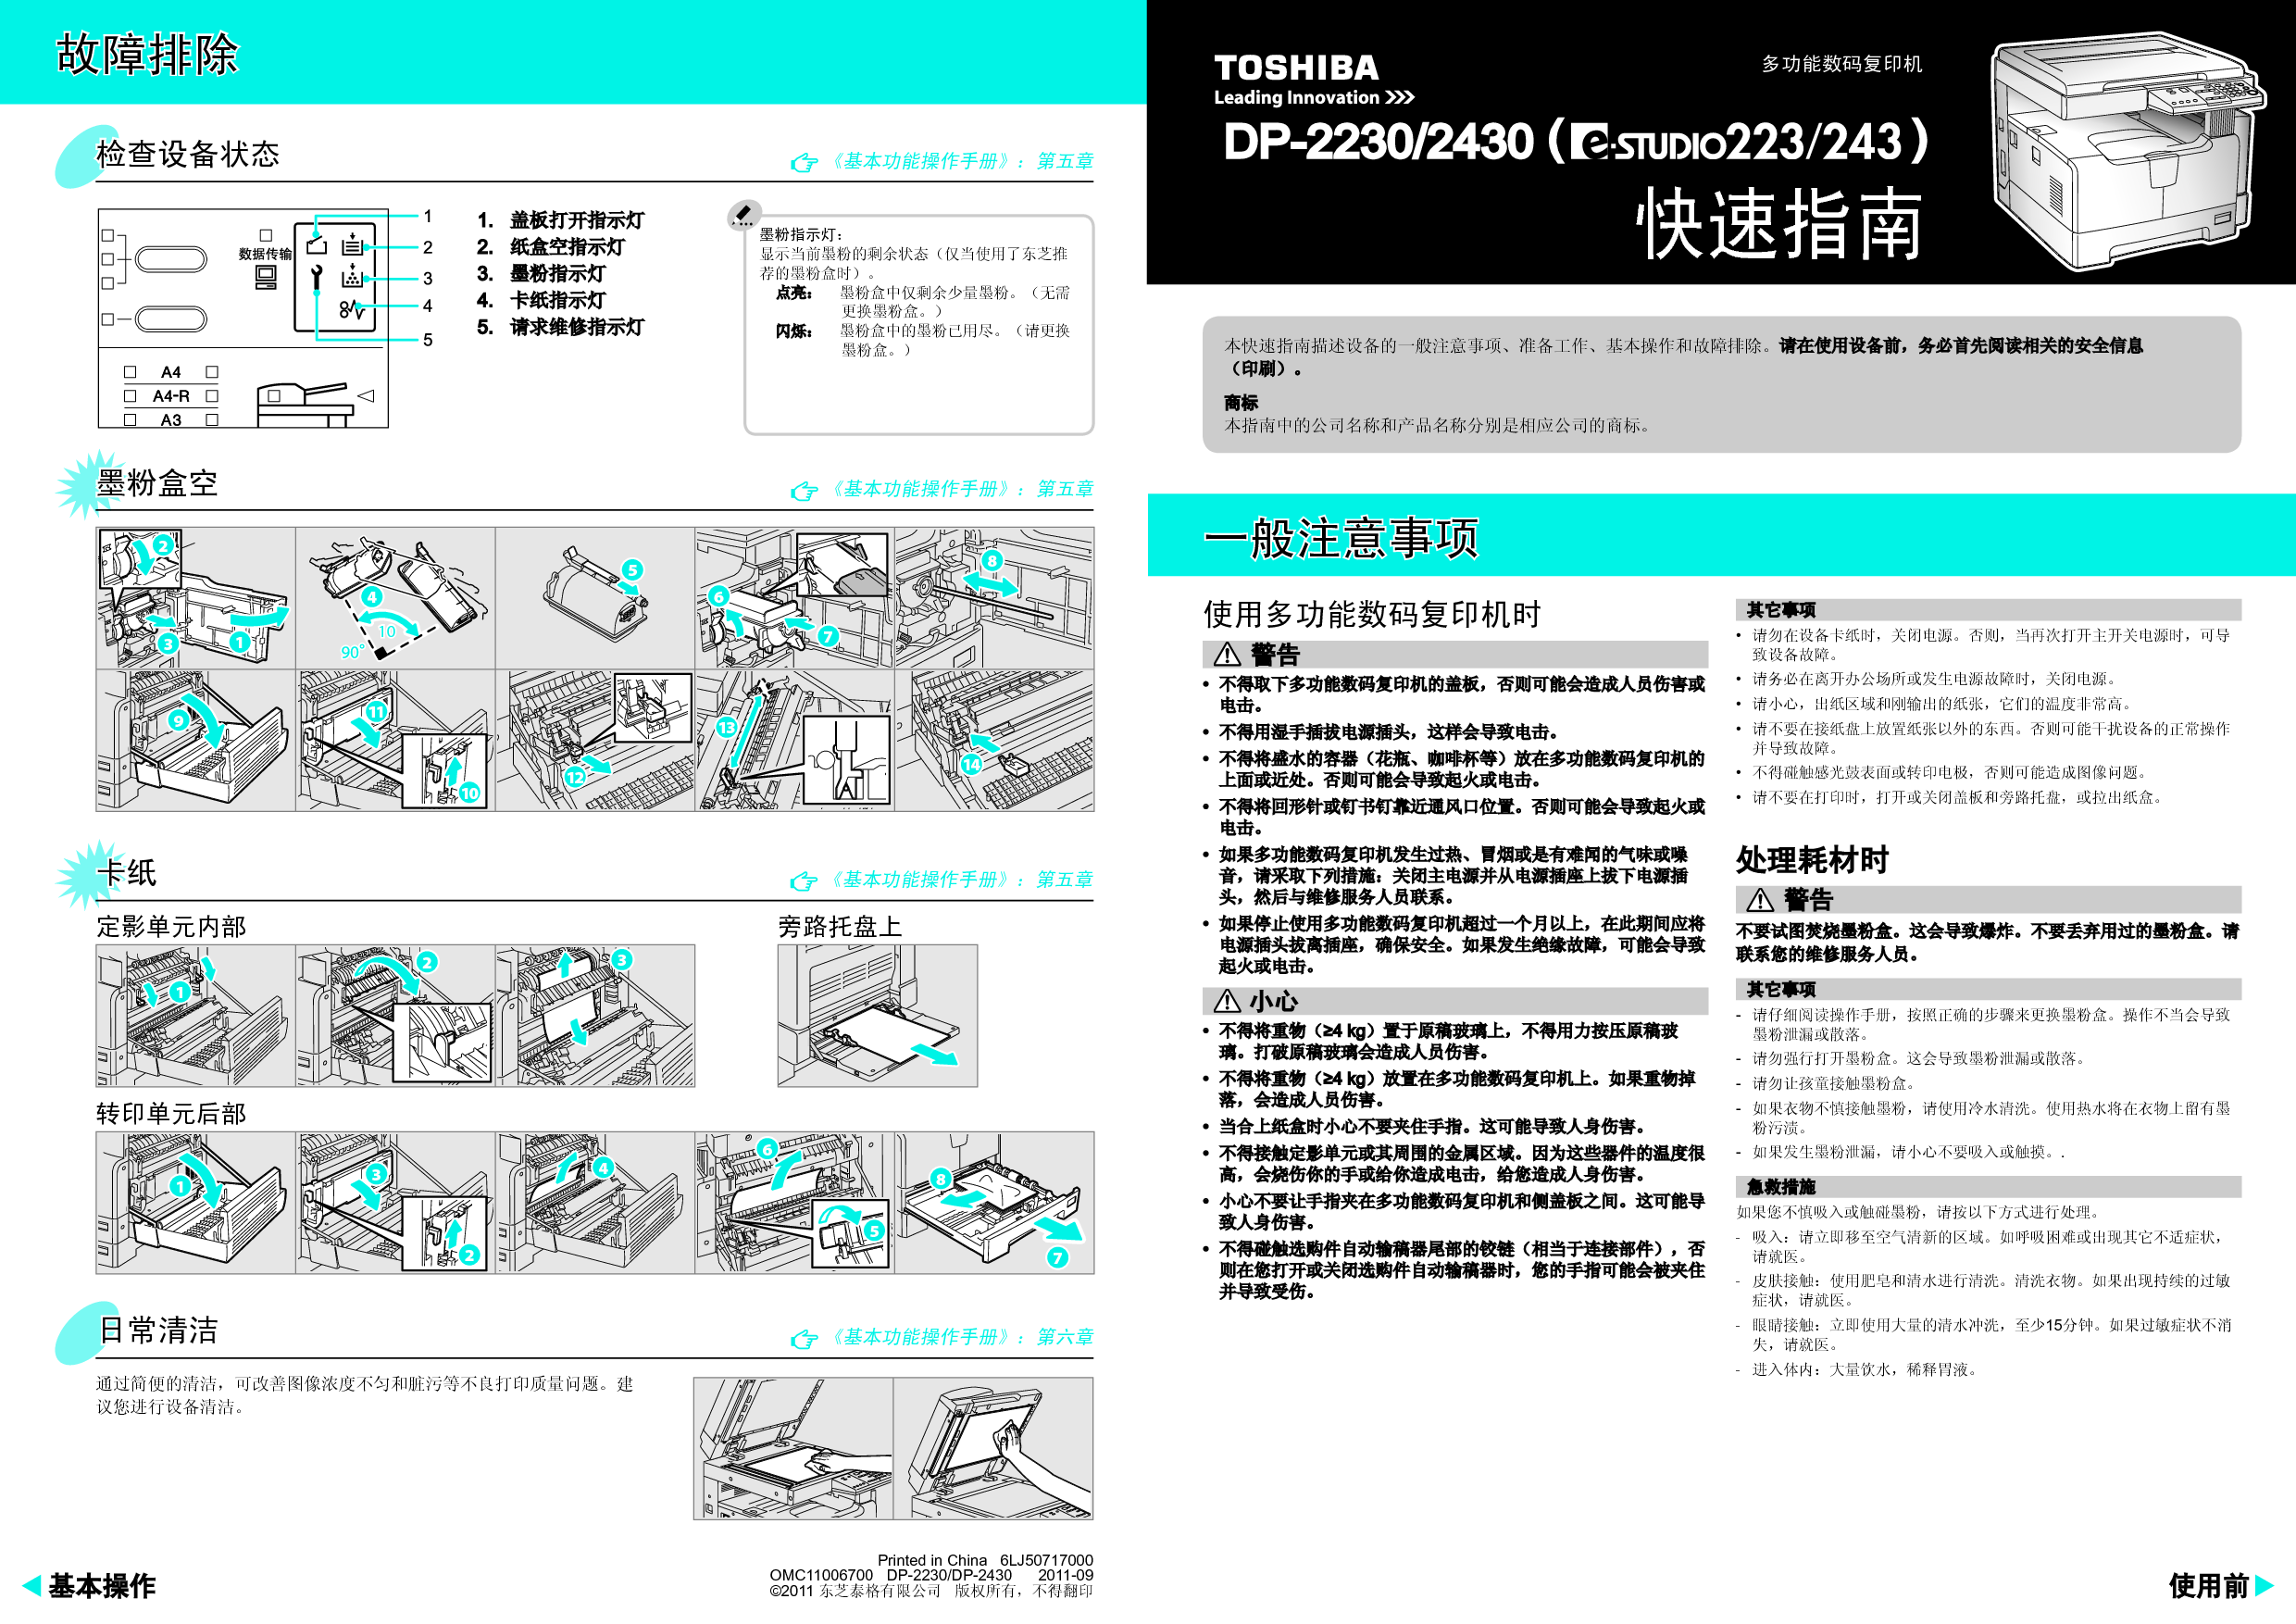 东芝 Toshiba DP-2230, e-STUDIO 223 基础使用手册 封面